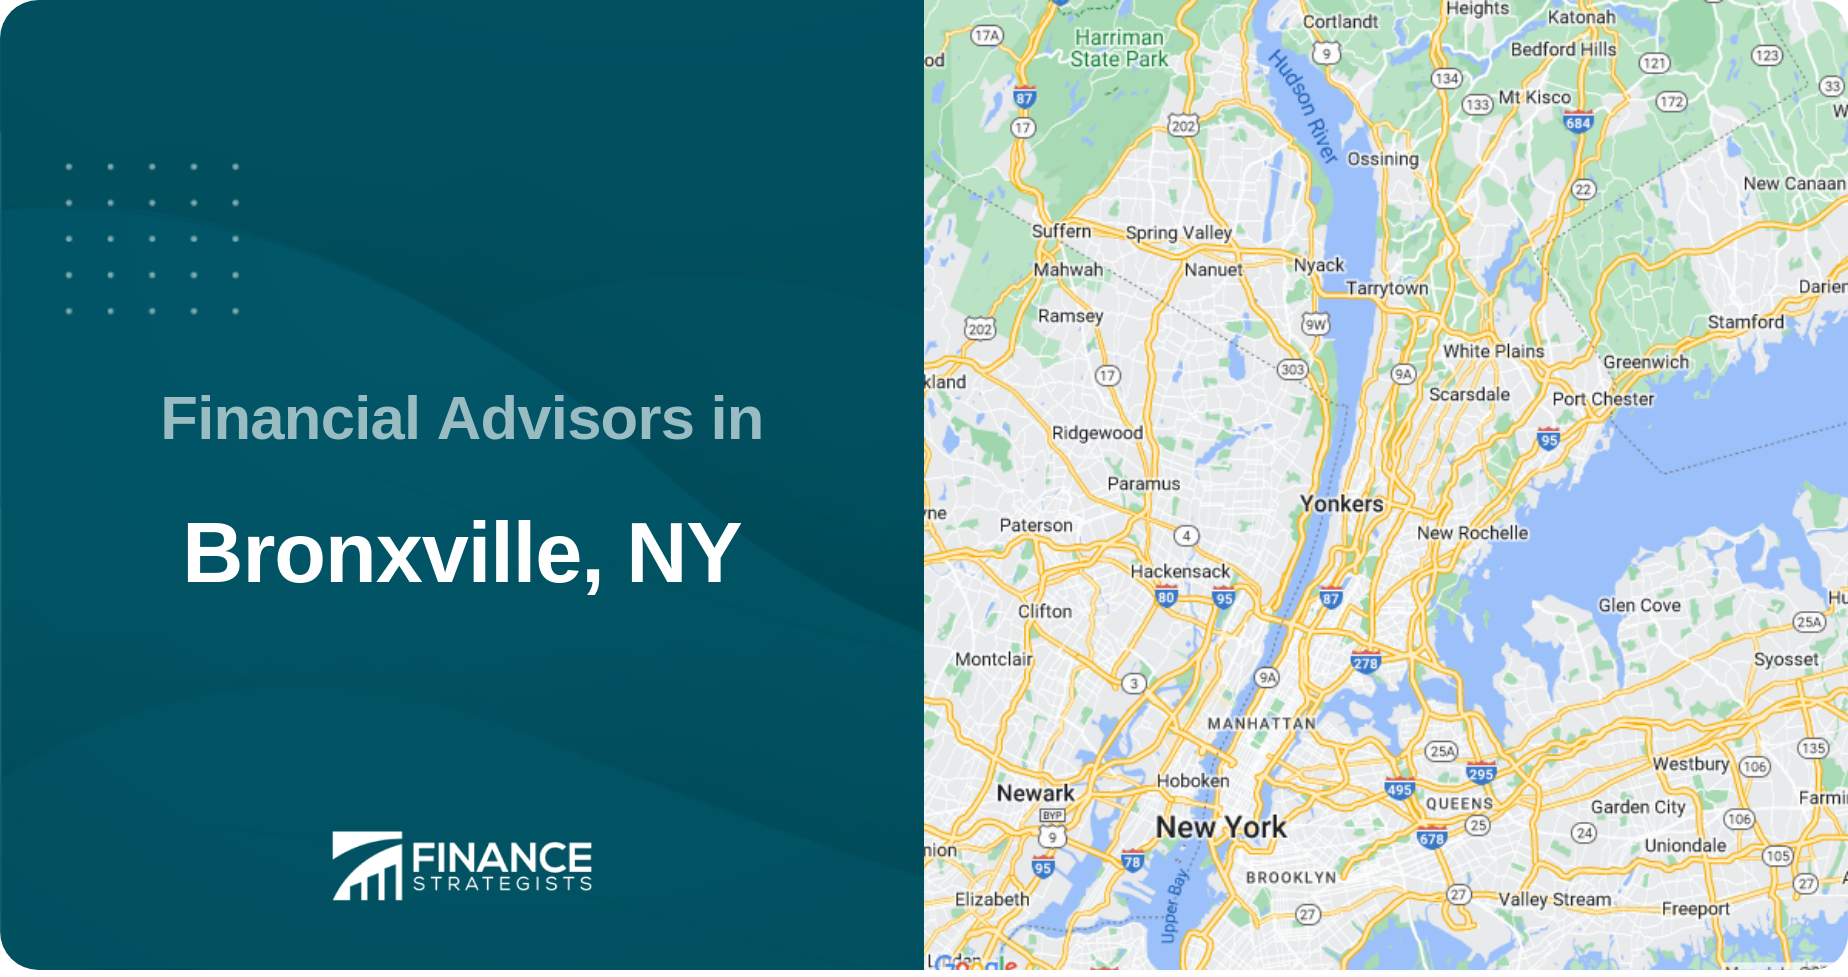 Financial Advisors in Bronxville, NY